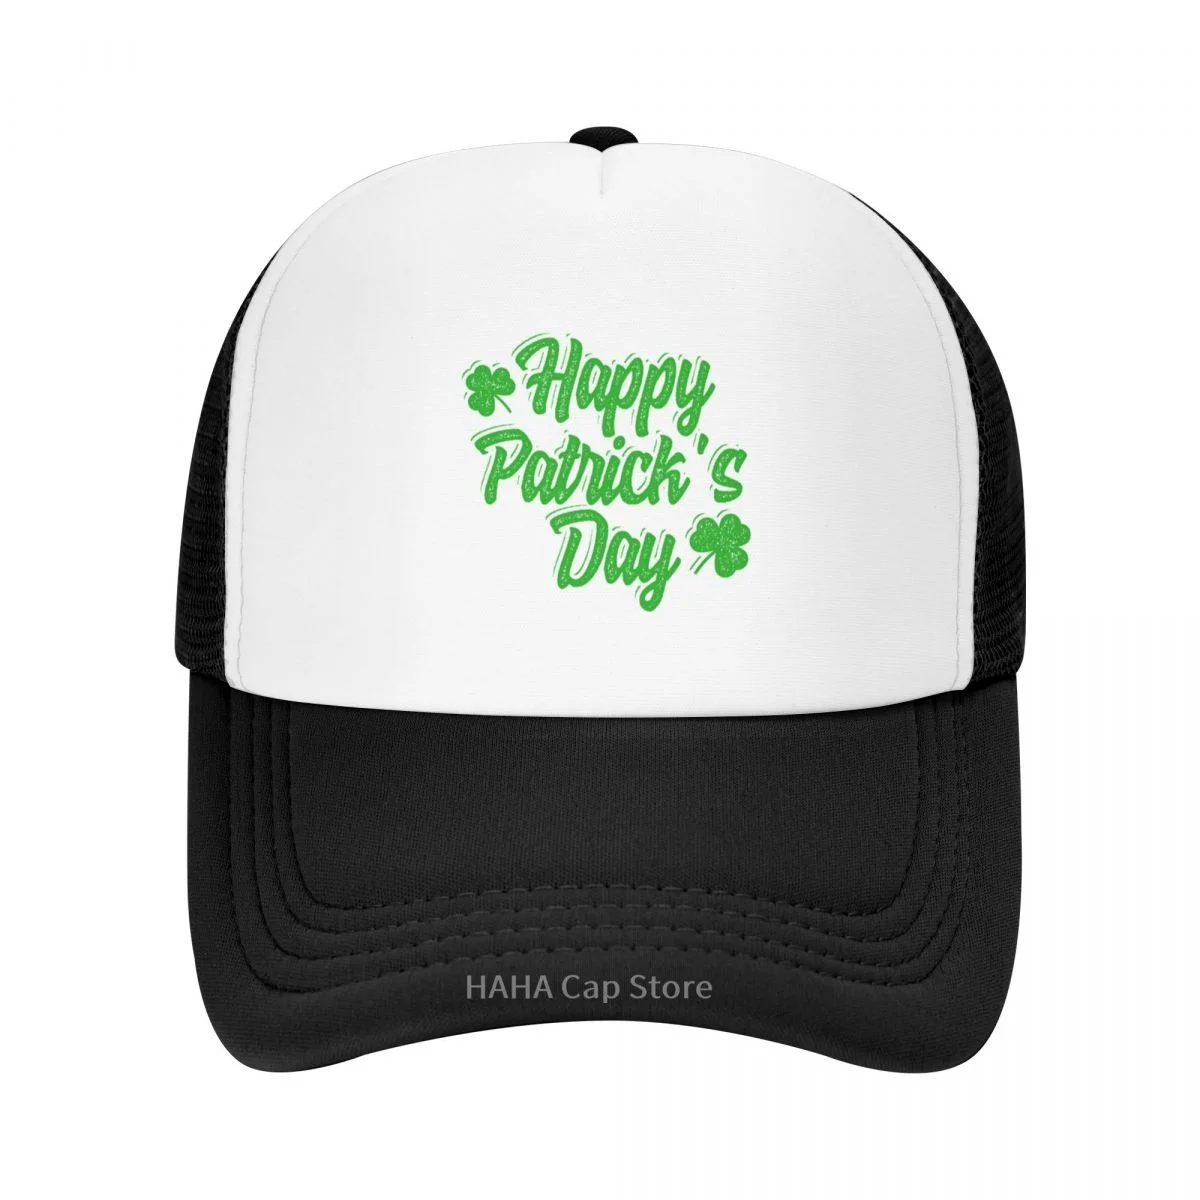 

Шляпа в Ирландском стиле от St paфокусов, бейсболка в сеточку, шляпа из полиэстера, популярная Регулируемая влагостойкая шляпа в подарок на де...